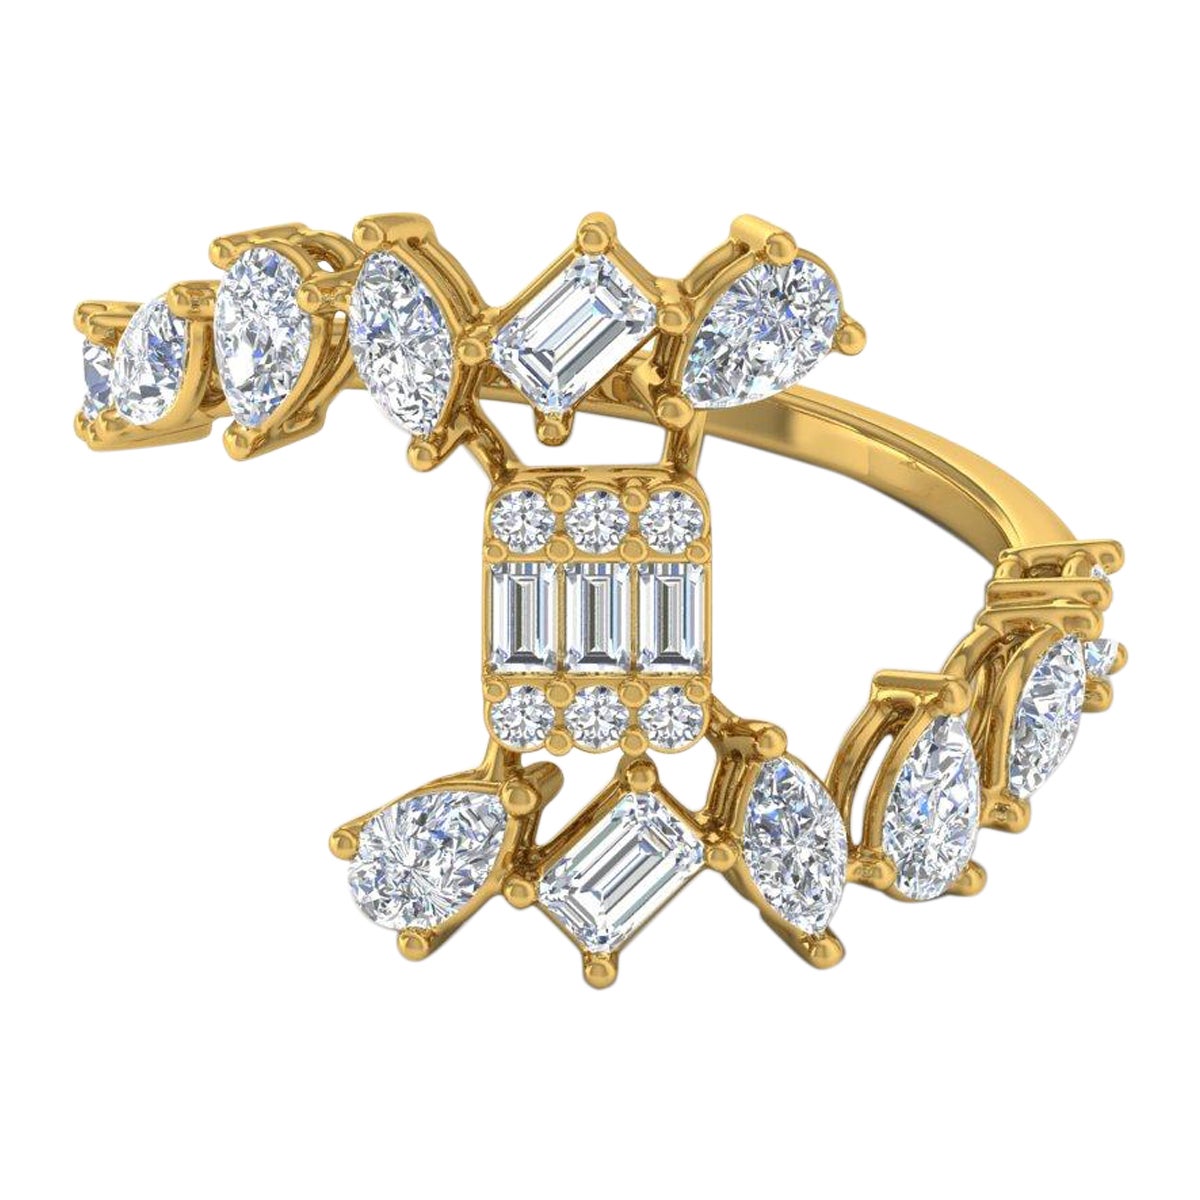 Bague avec diamant poire taille émeraude de 1,6 carat, pureté SI, couleur HI, en or jaune 18 carats